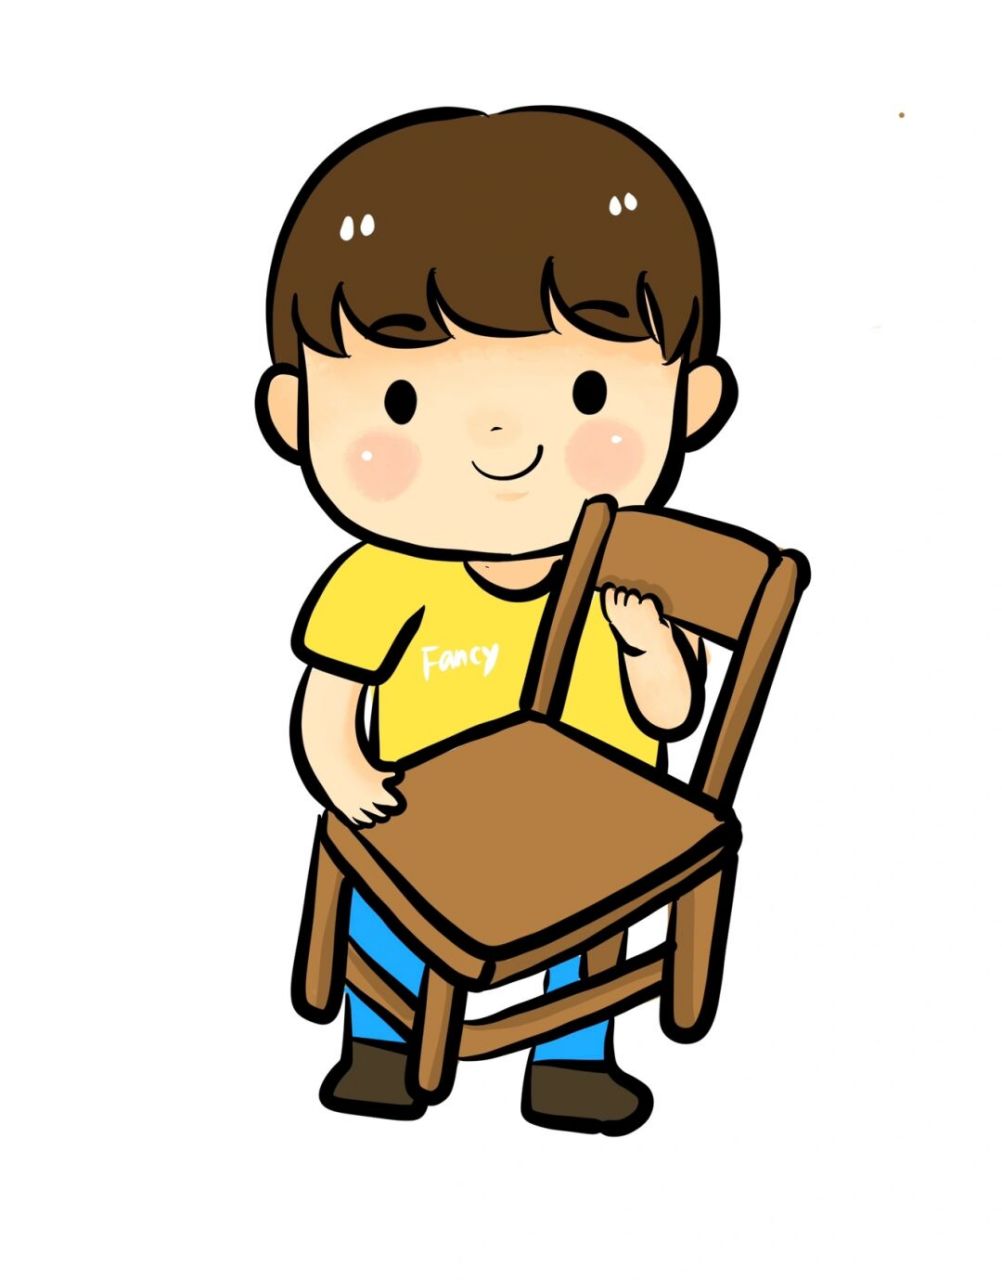 幼儿园卡通82环创 搬小椅子卡通图 有小朋友老是喜欢搬小椅子的时候